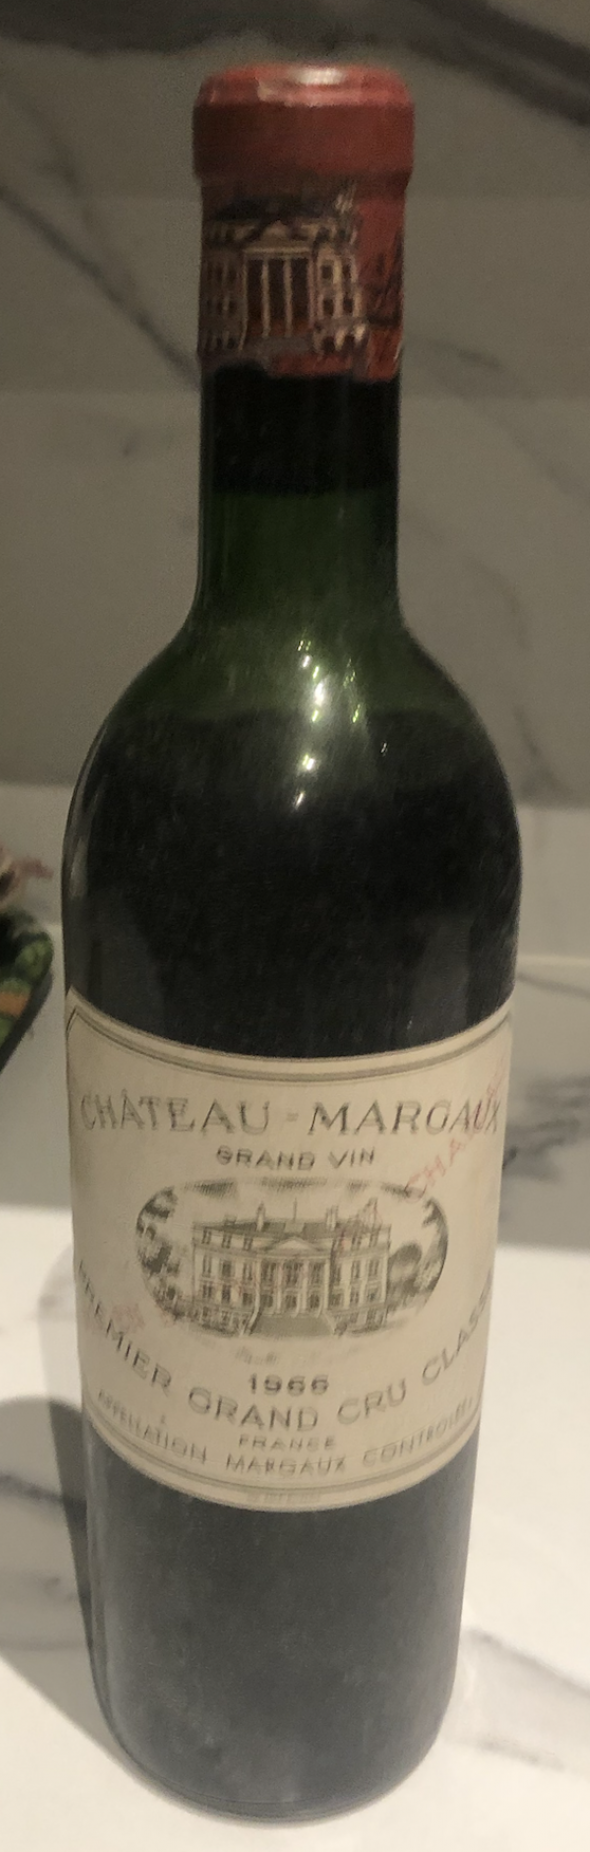 Chateau Margaux Grand Vin 1966 Premier Grand Cru Classé, Margaux